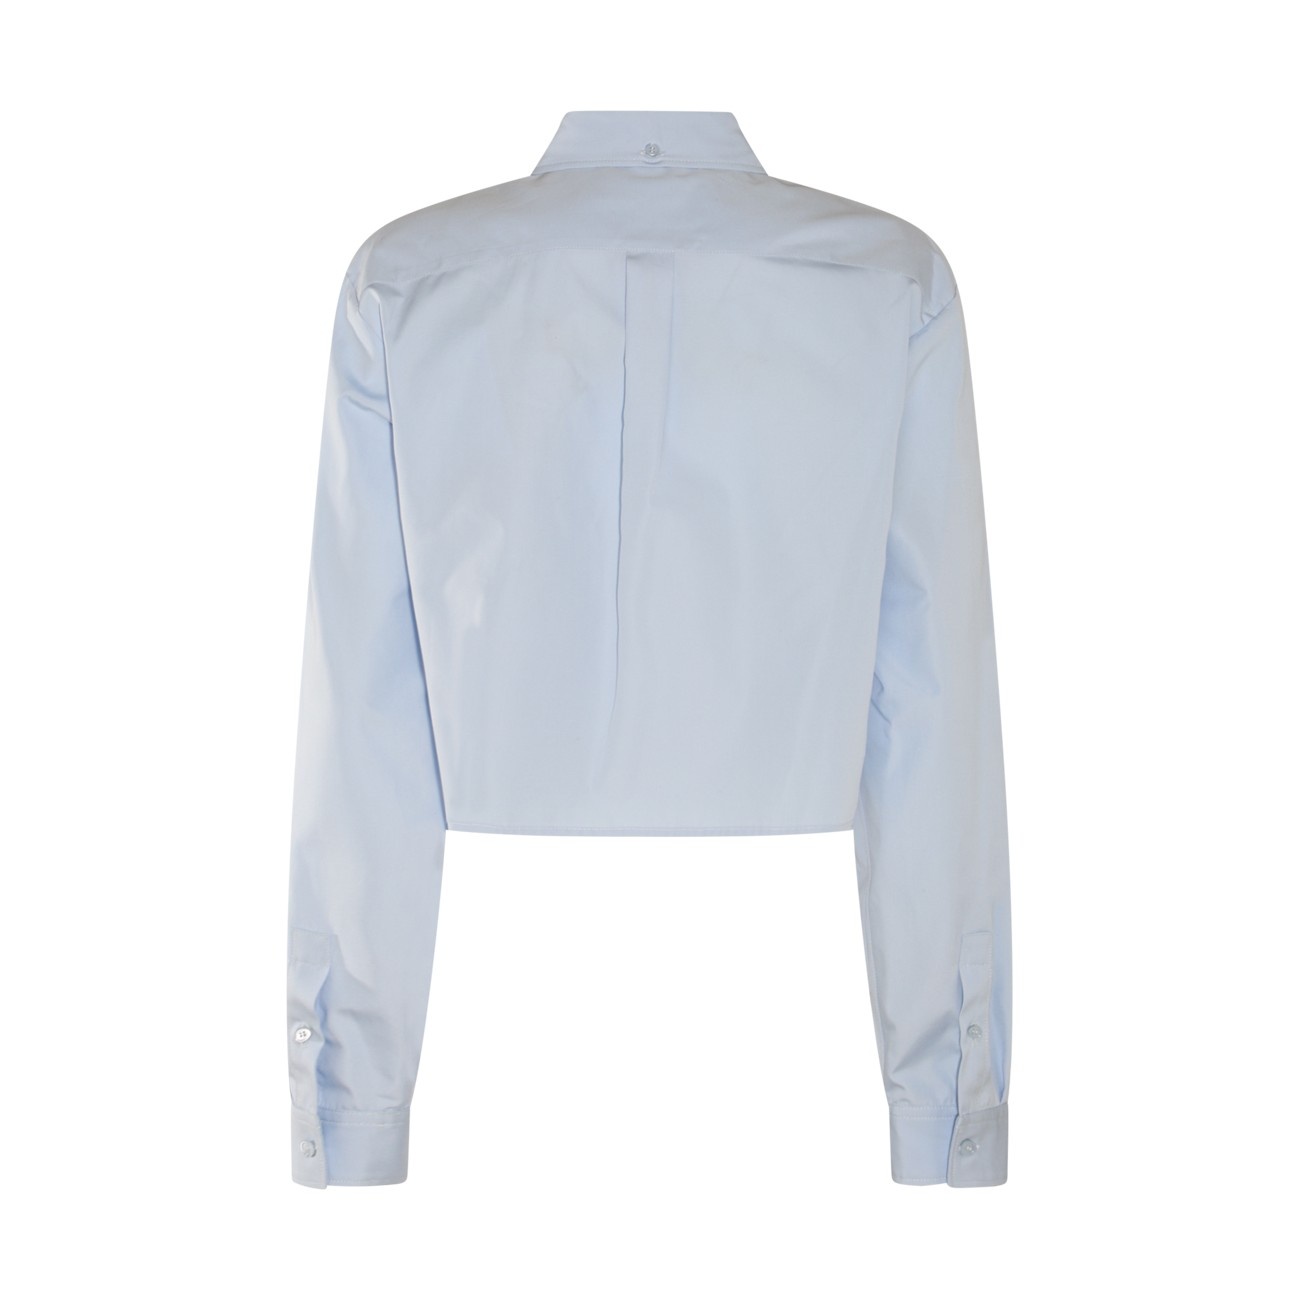 light blue cotton shirt - 2